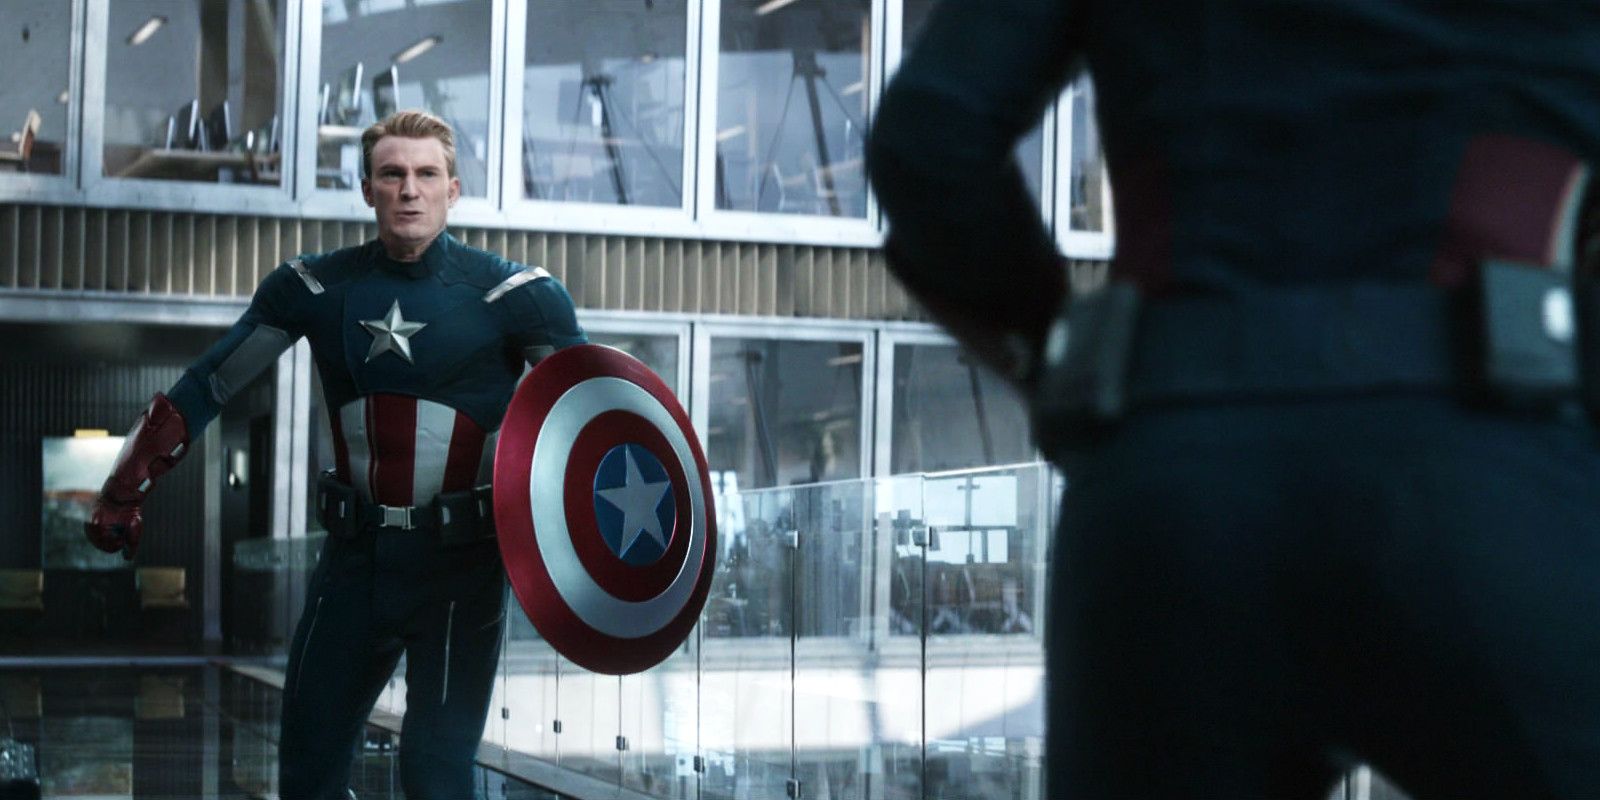 Chris Evans As Captain America in Avengers Endgame